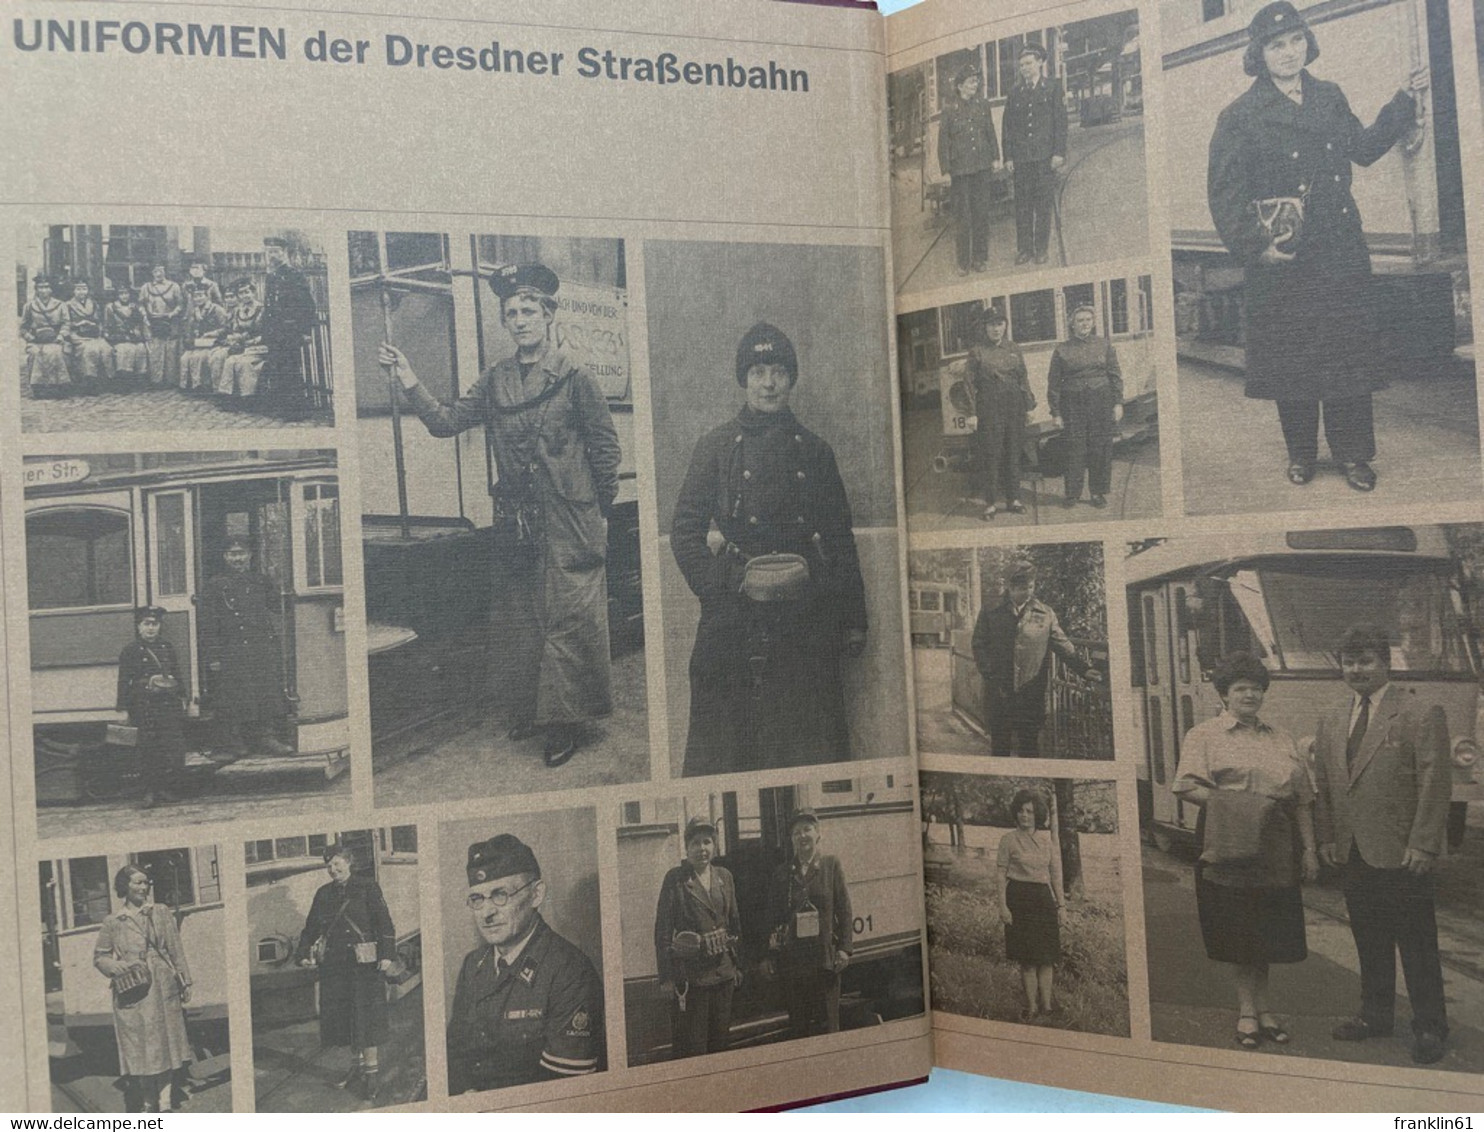 Von Kutschern und Kondukteuren : die Geschichte der Straßenbahn zu Dresden von 1872 bis 1997.